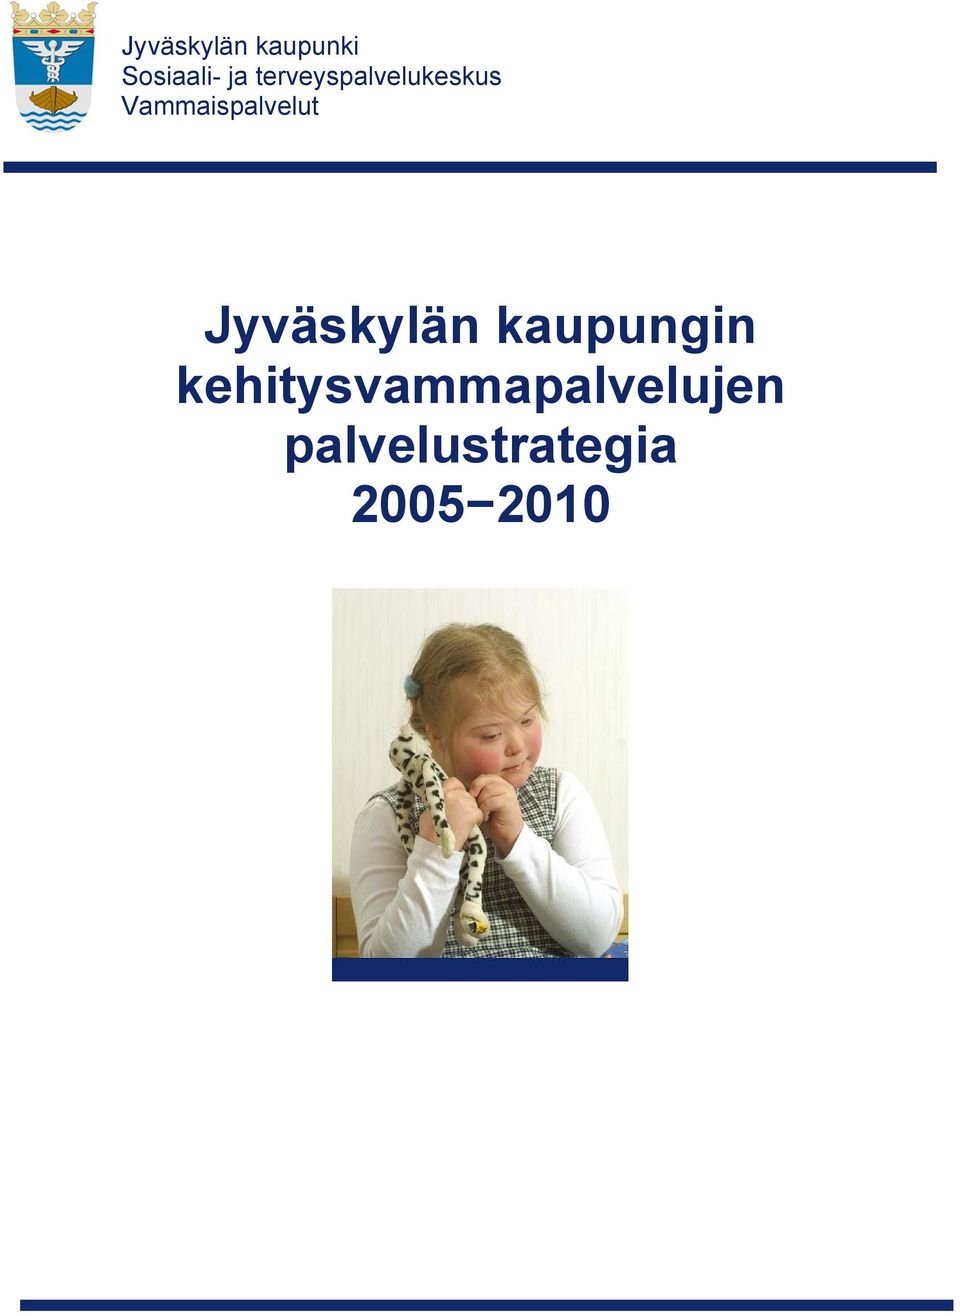 Vammaispalvelut Jyväskylän